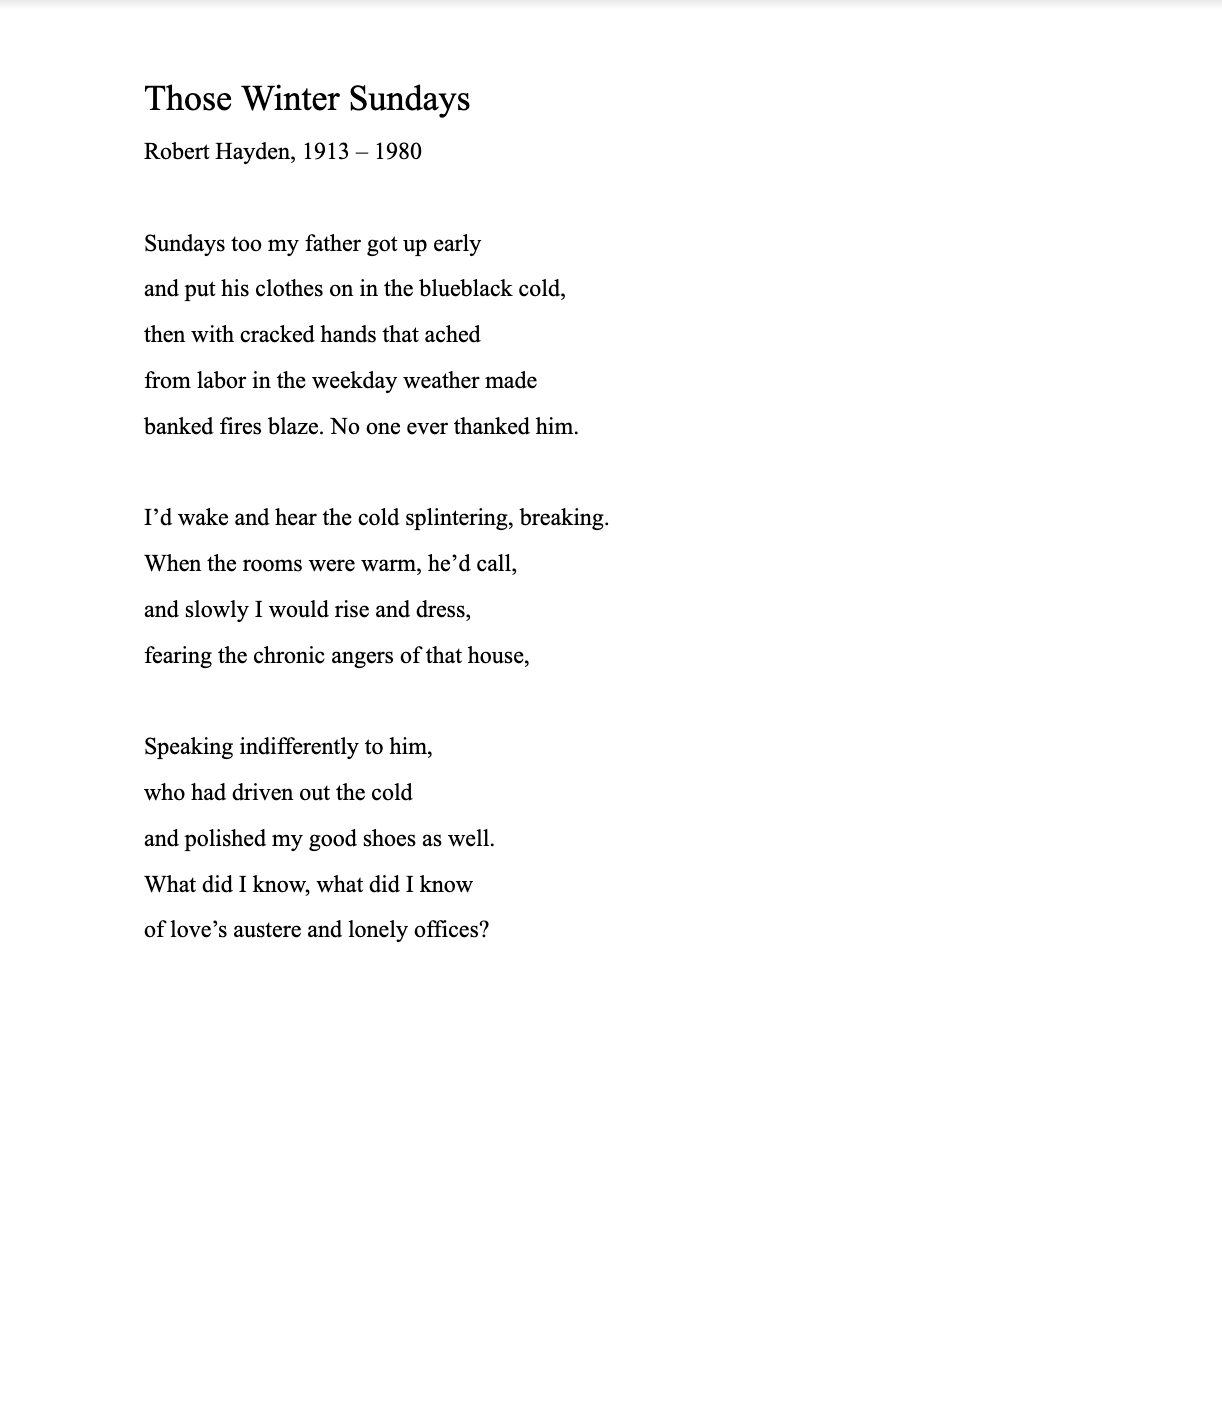 robert hayden poem.png